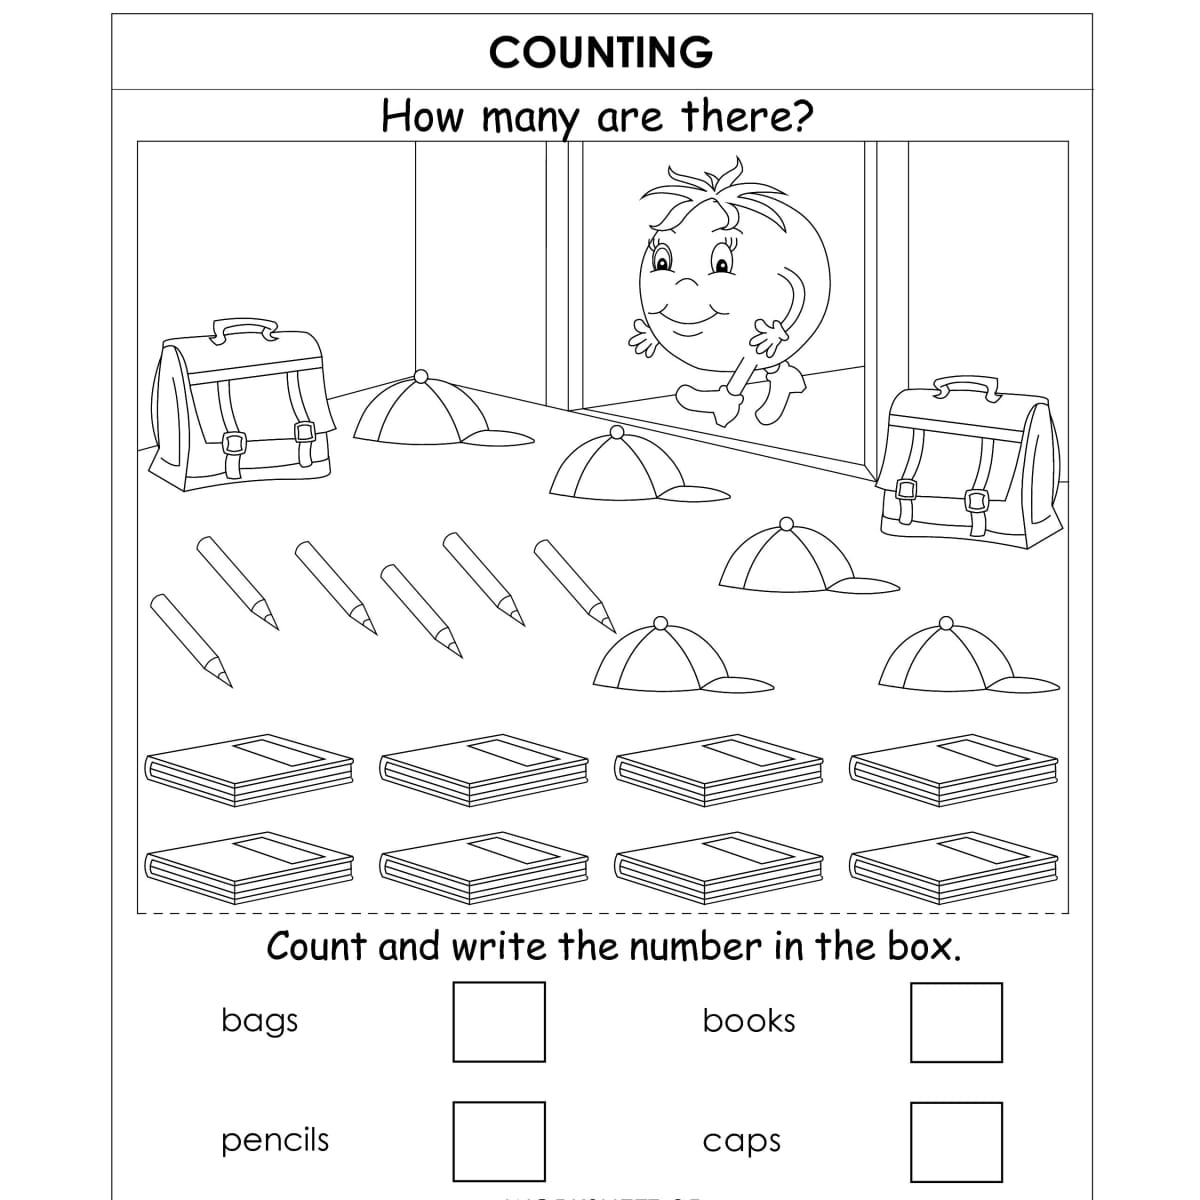 ukg kindergarten worksheets hubpages